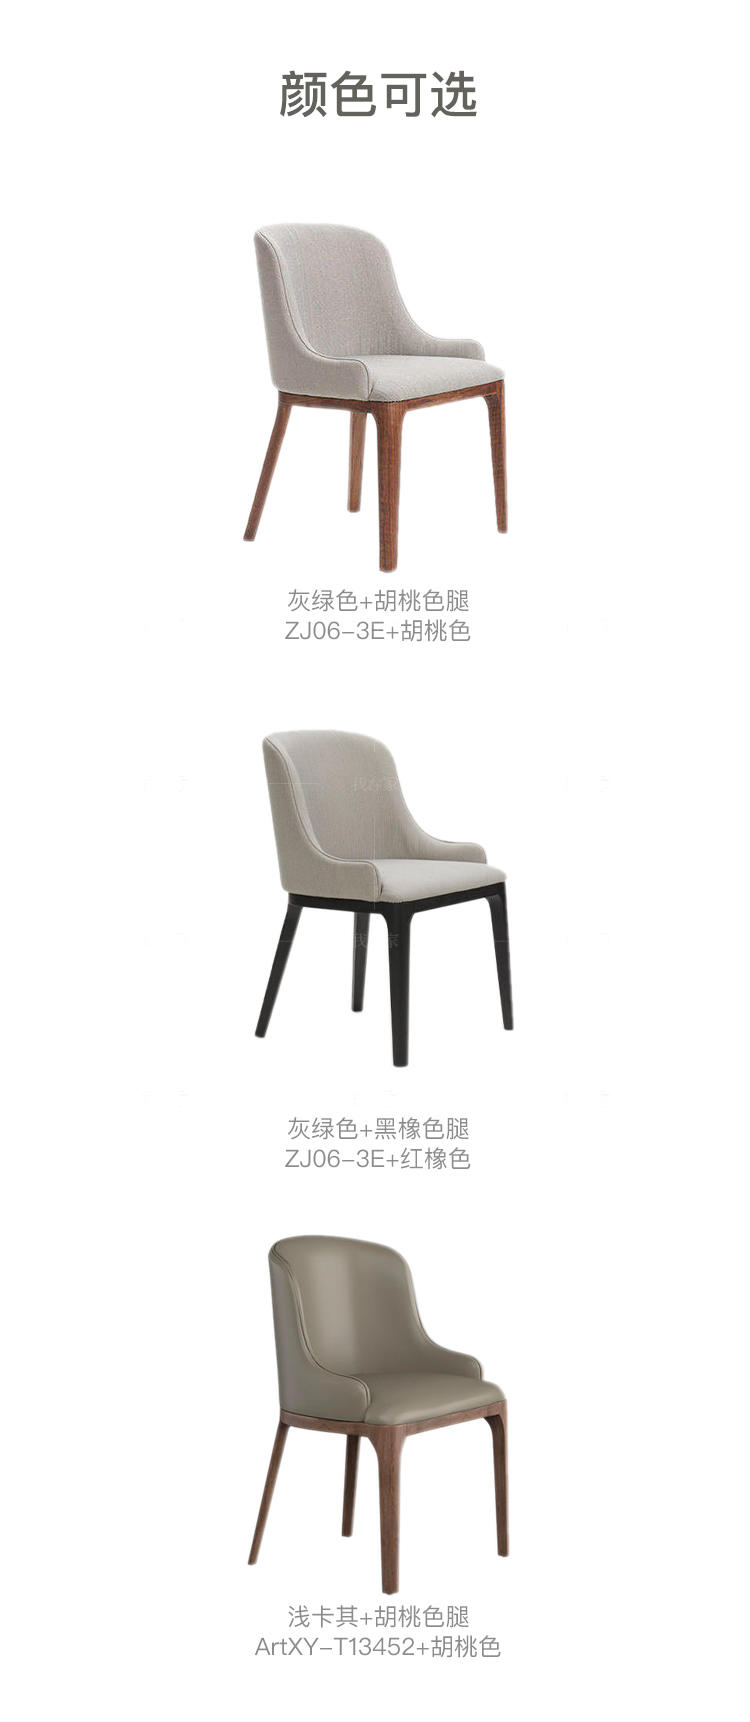 意式极简风格流苏餐椅的家具详细介绍